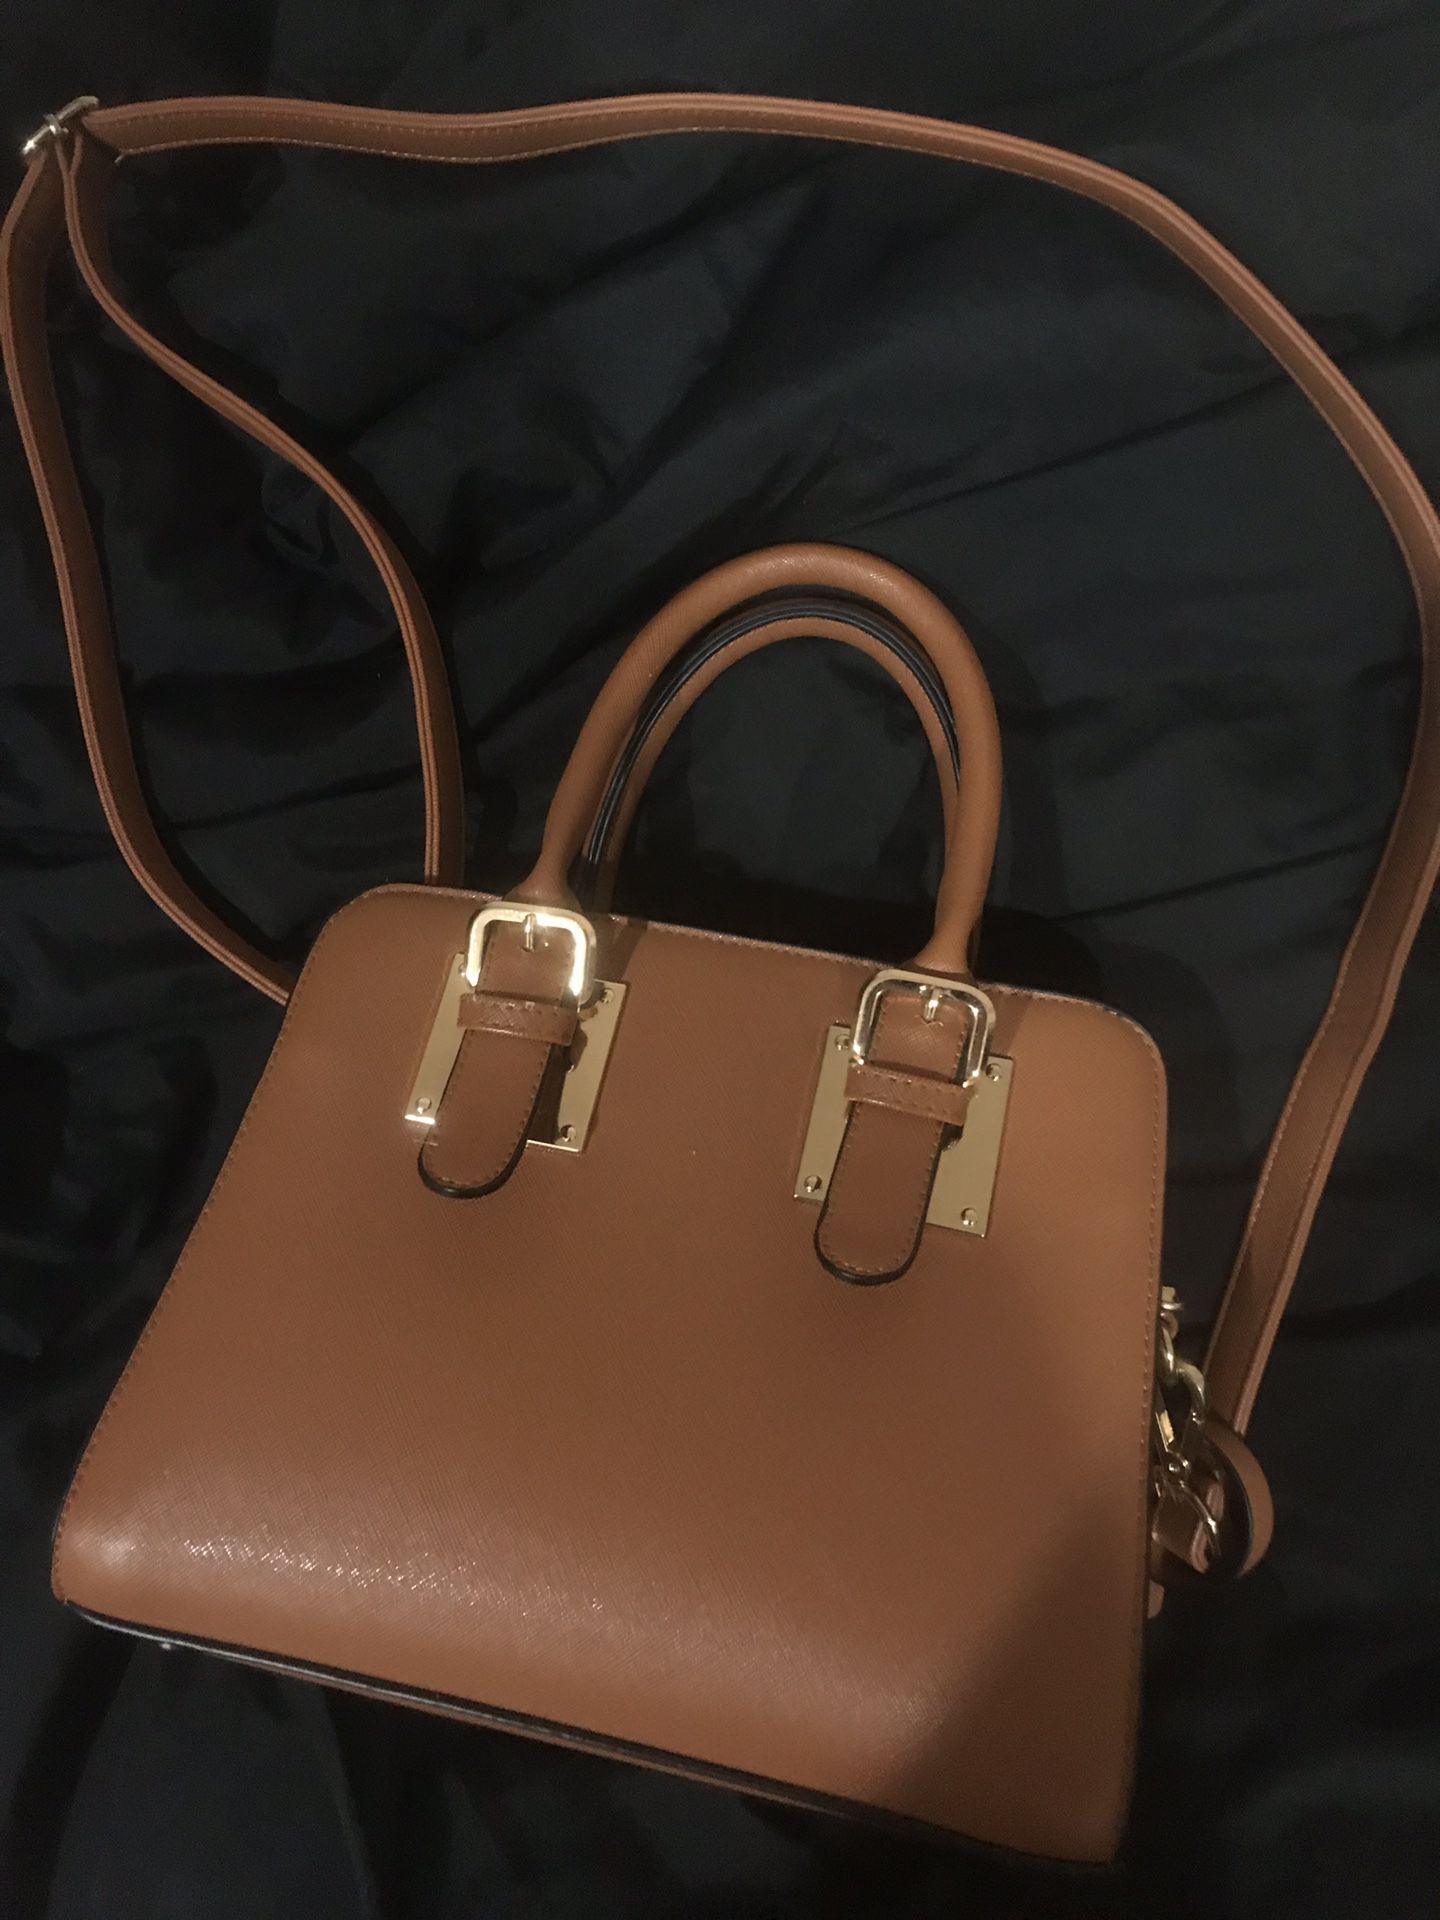 Handbag for Sale in El Monte, CA - OfferUp